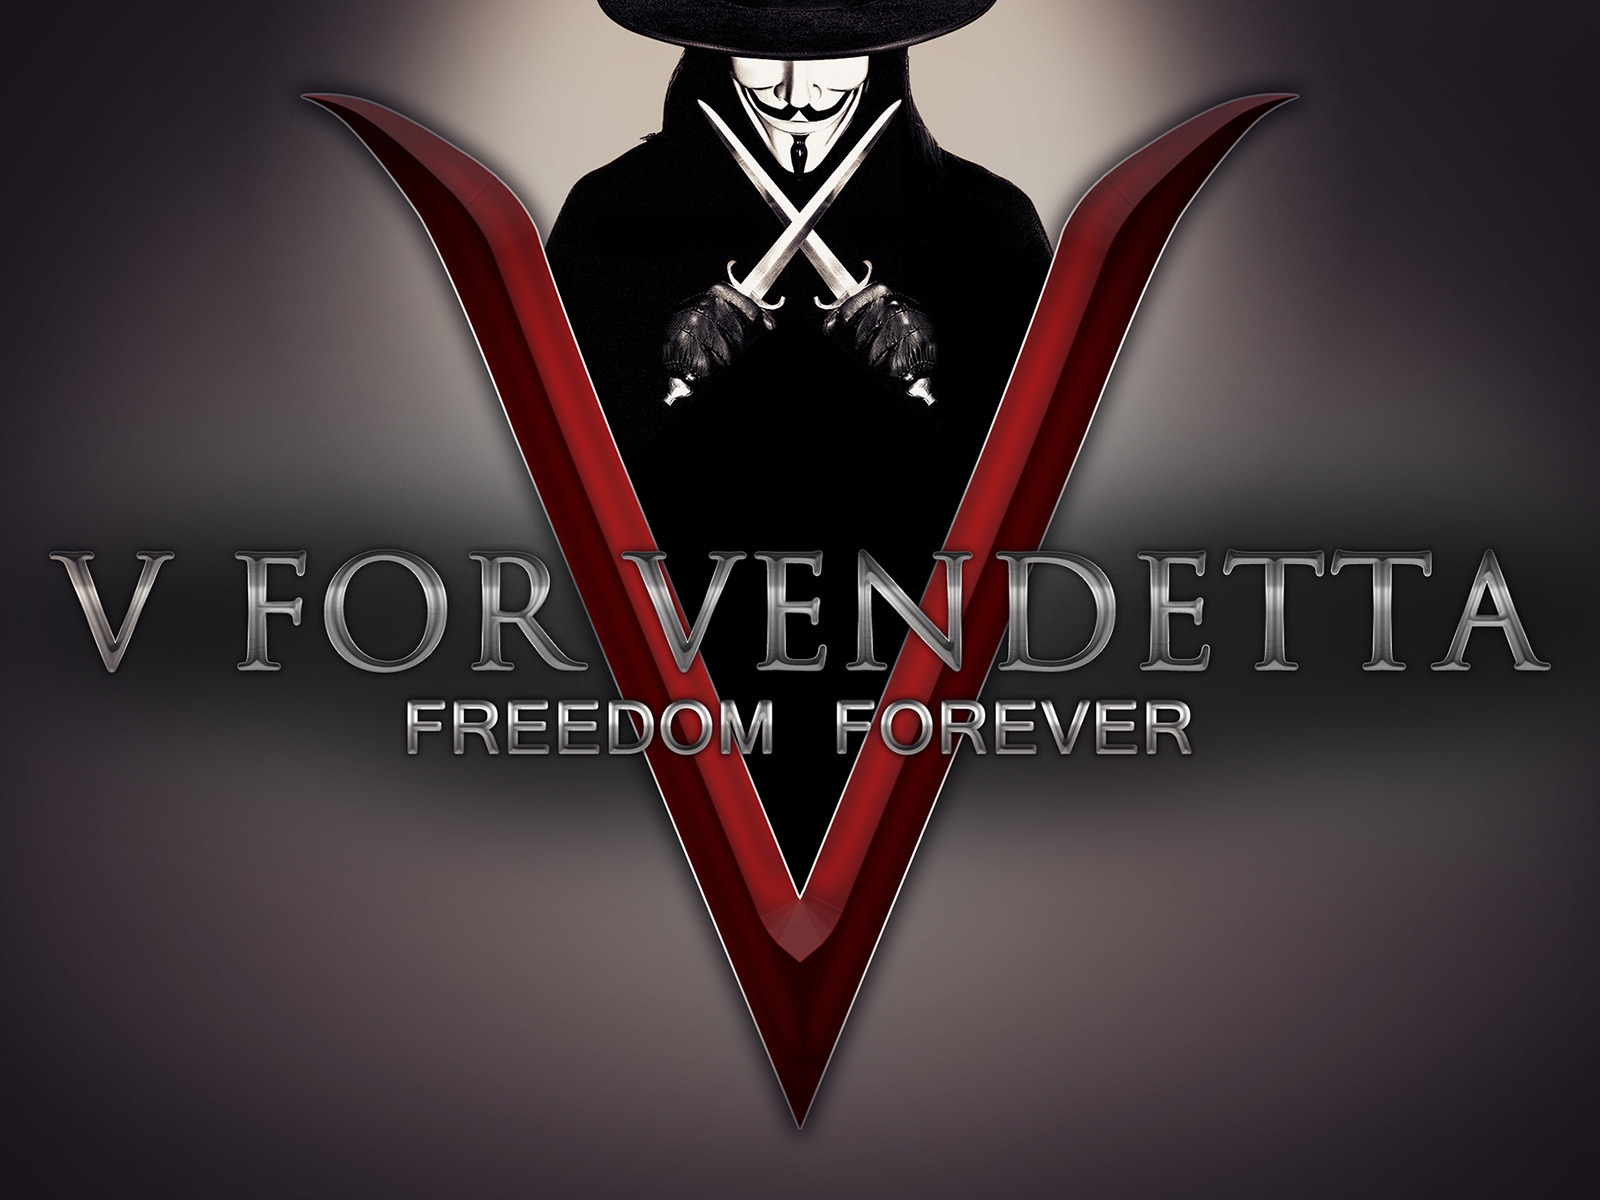 V for Vendetta Freedom Forever for 1600 x 1200 resolution